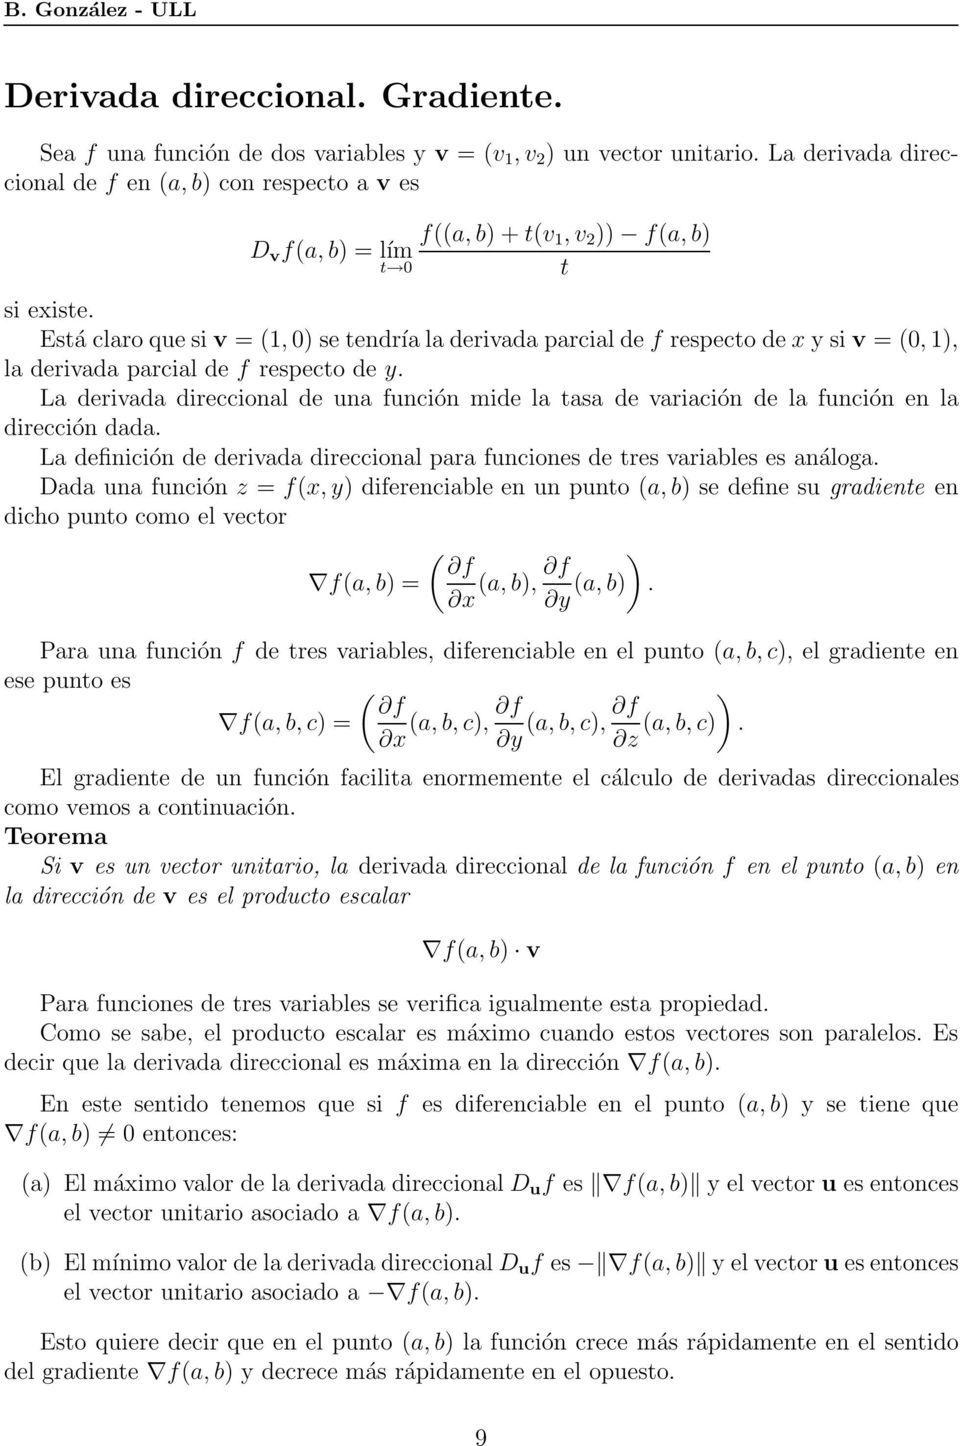 Está claro que si v = (1, 0) se tendría la derivada parcial de f respecto de x y si v = (0, 1), la derivada parcial de f respecto de y.